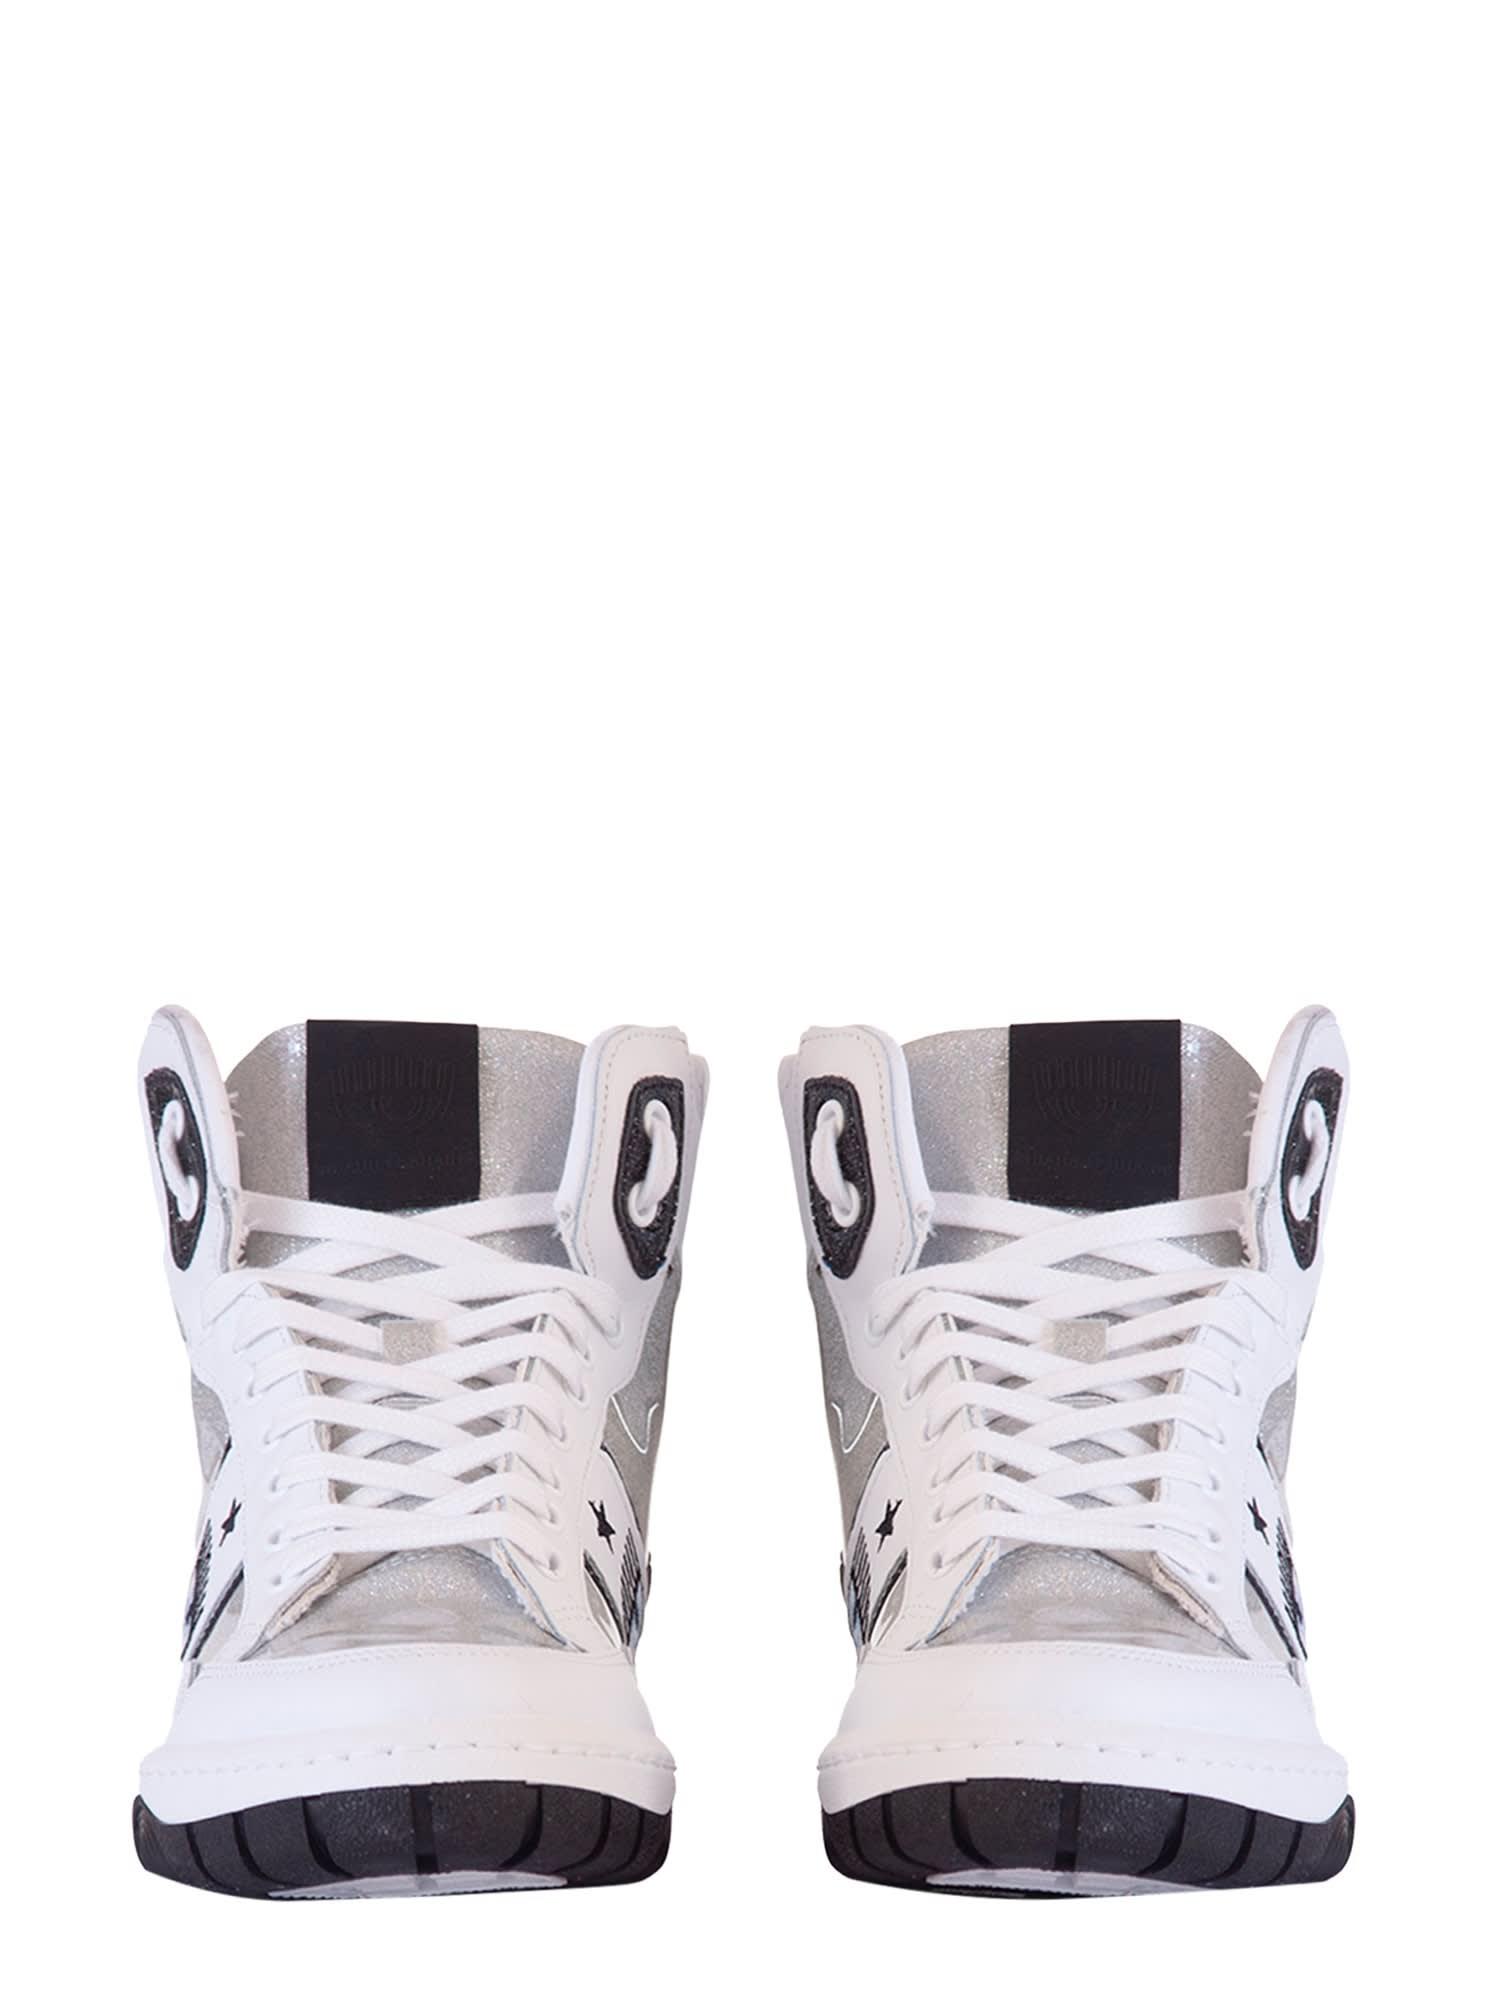 Chiara Ferragni Logomania High Sneaker in White | Lyst